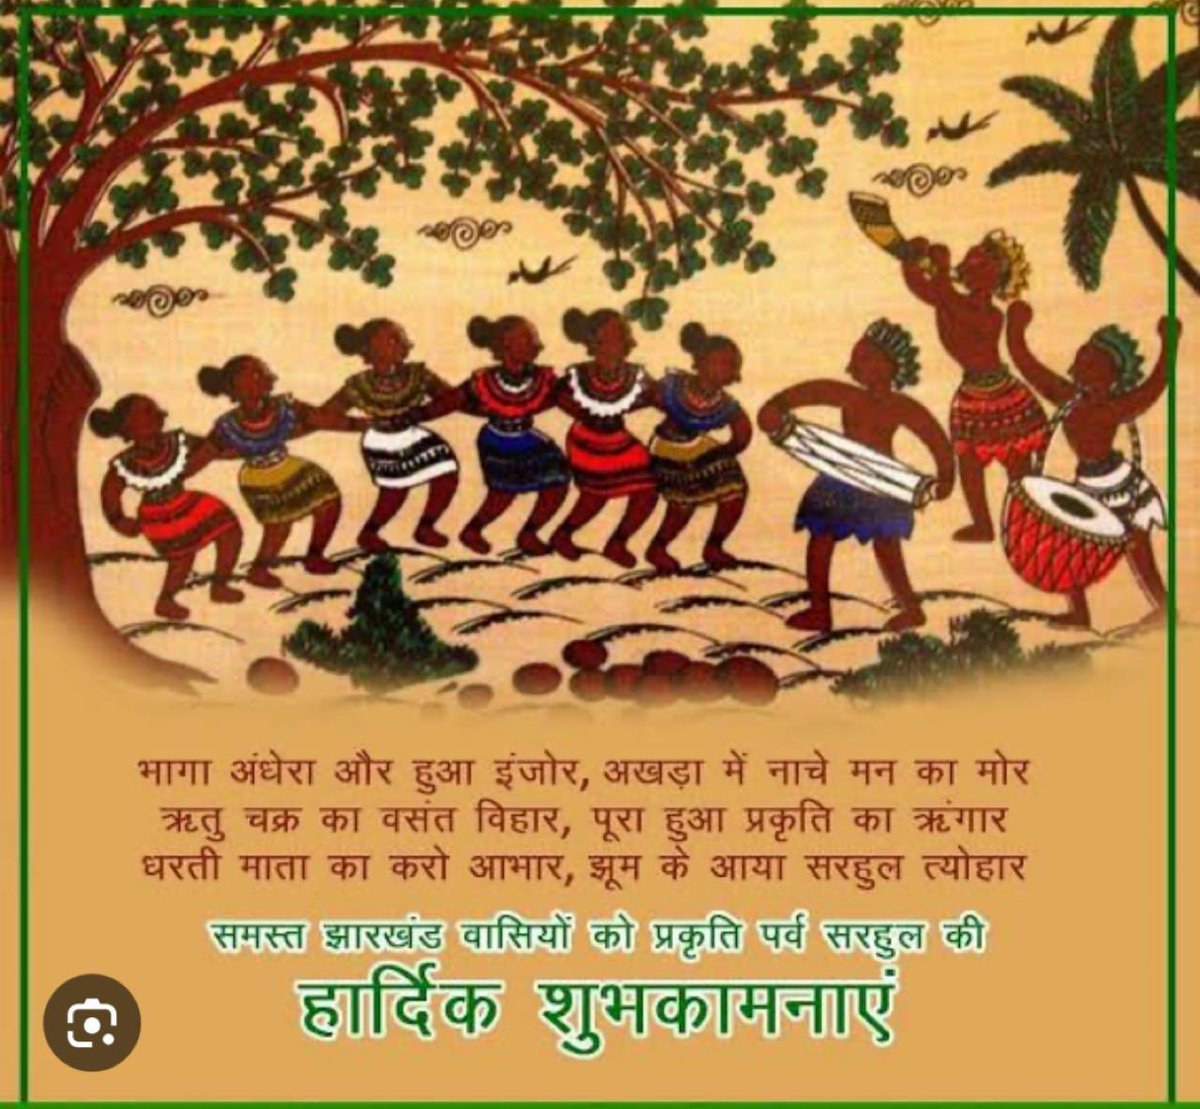 झारखंड के प्रकृति पर्व सरहुल की हार्दिक शुभकामनाएँ - Greetings and good wishes on #Sarhul - Day of great celebrations in #Jharkhand